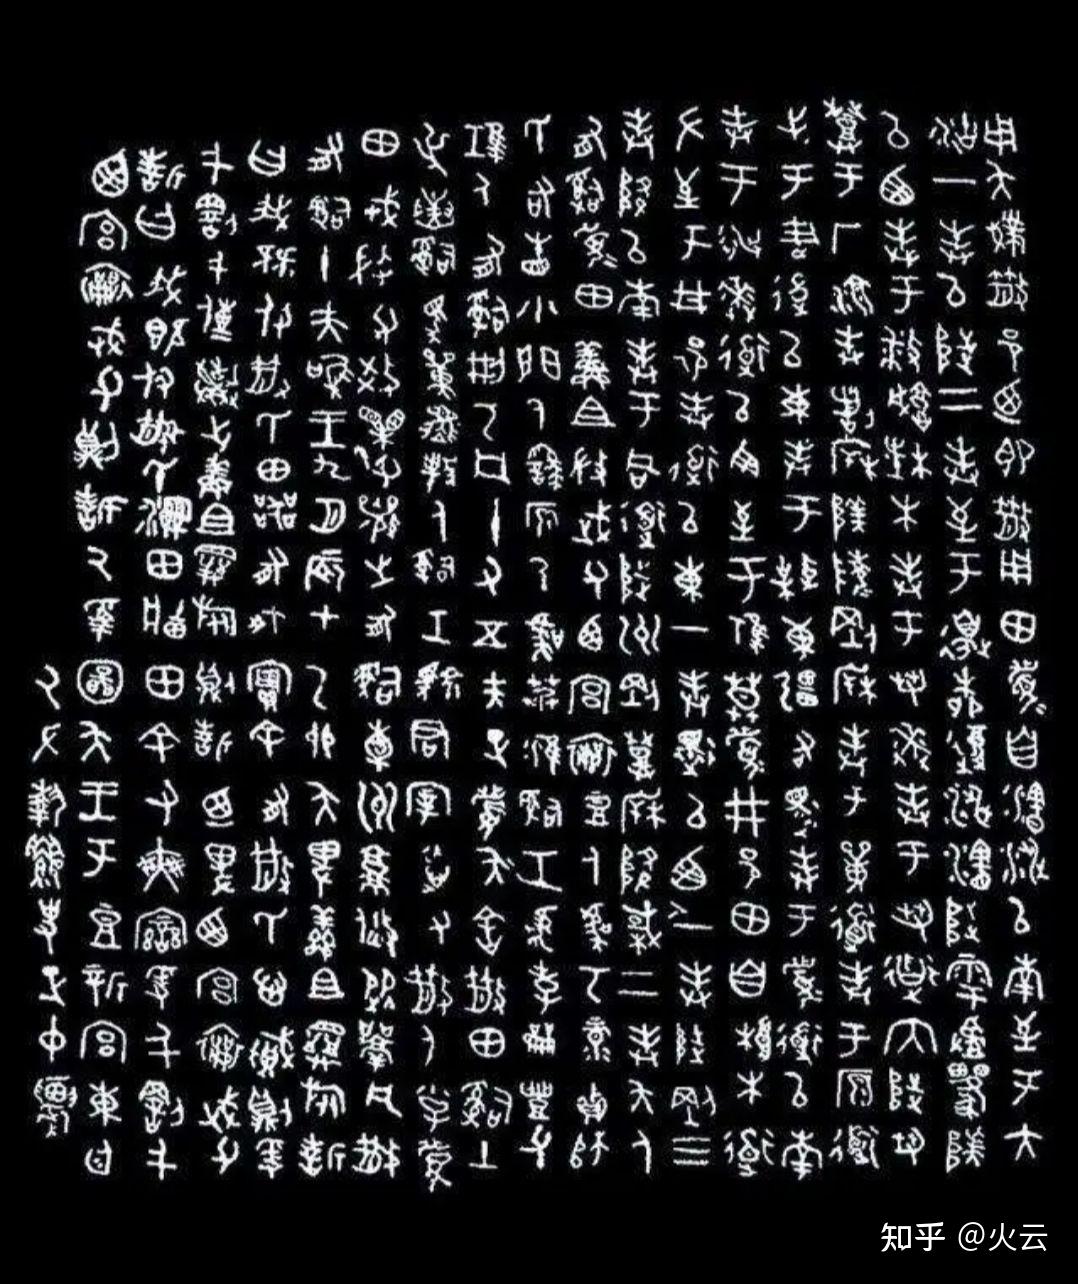 甲骨文,金文,战国文字和秦汉文字在古文字研究中的地位,优势和局限性